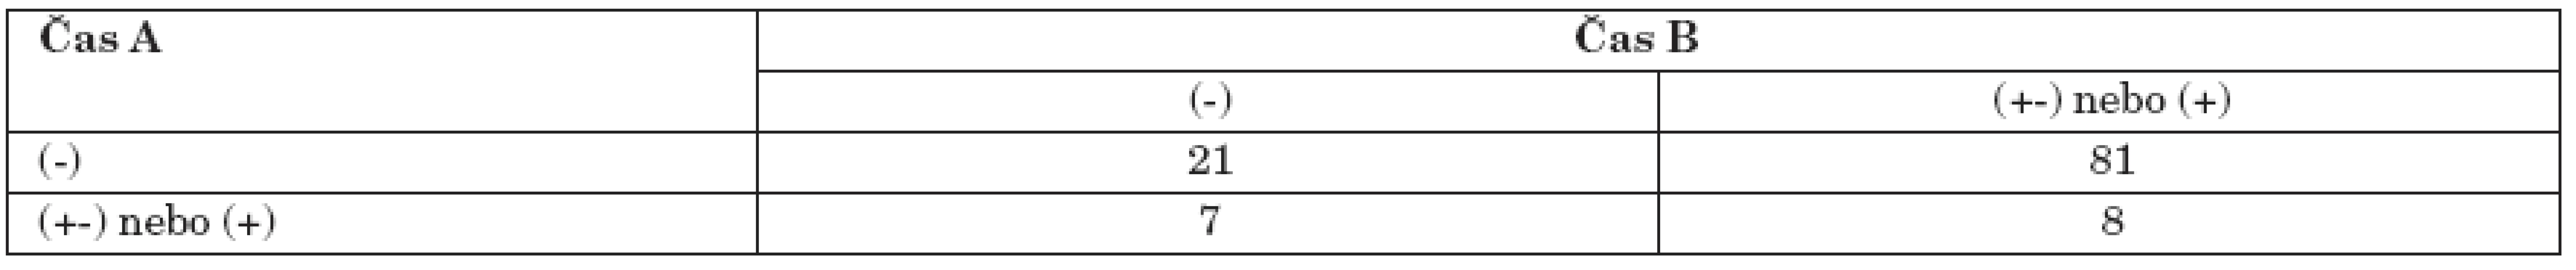 Hodnocení změny mezi časy A a B (6 měsíců po absolvování programu), N=117, McNemarův test.